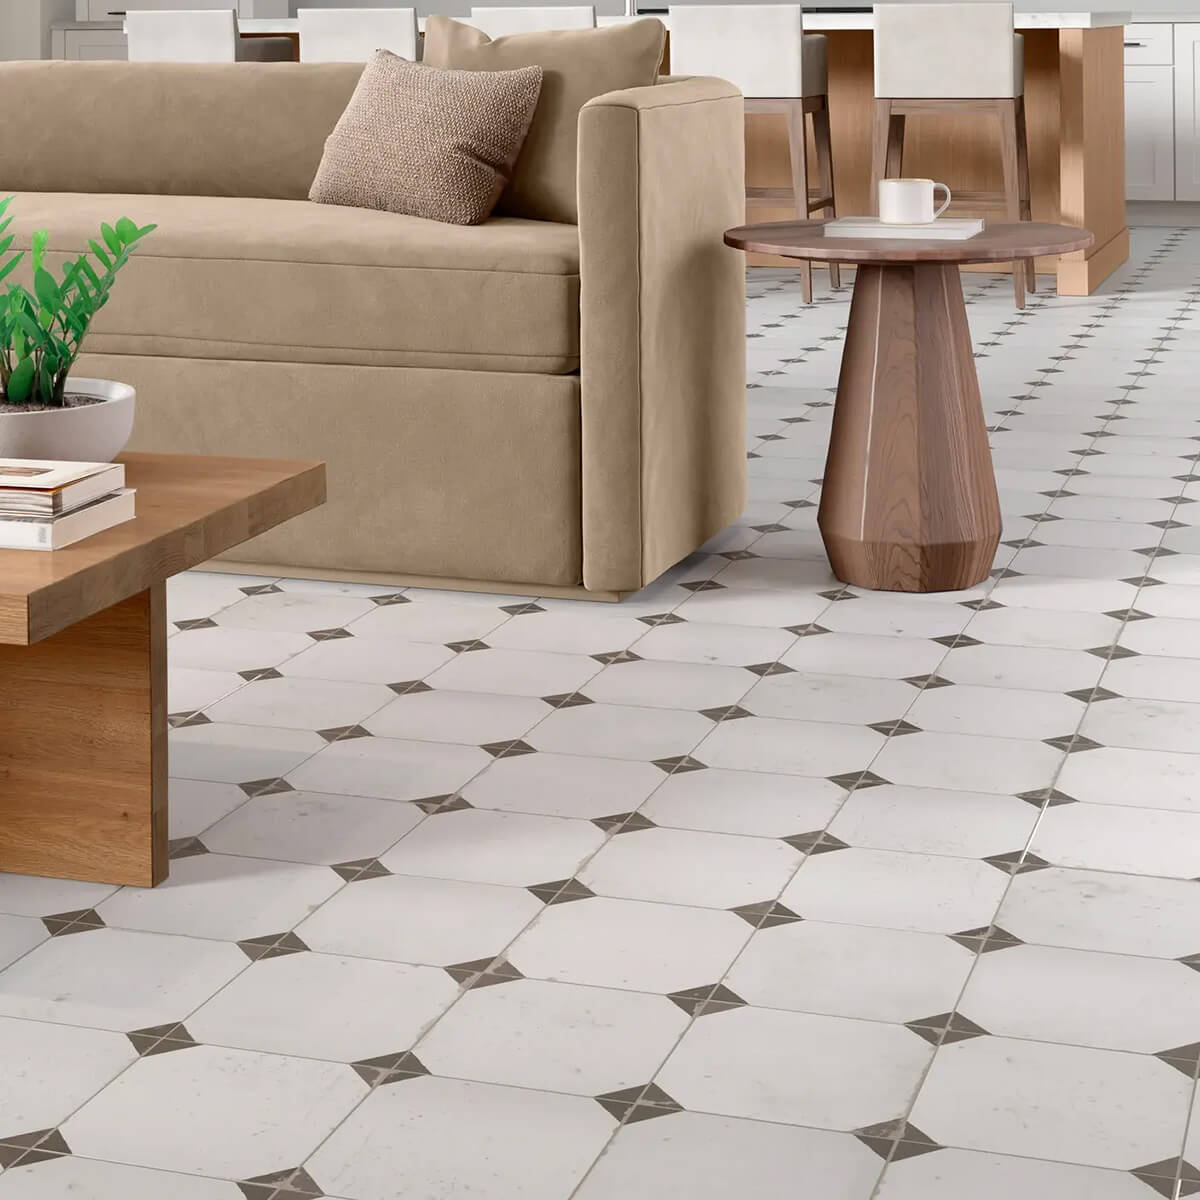 Tile flooring for living area | Lake Interiors Chelan